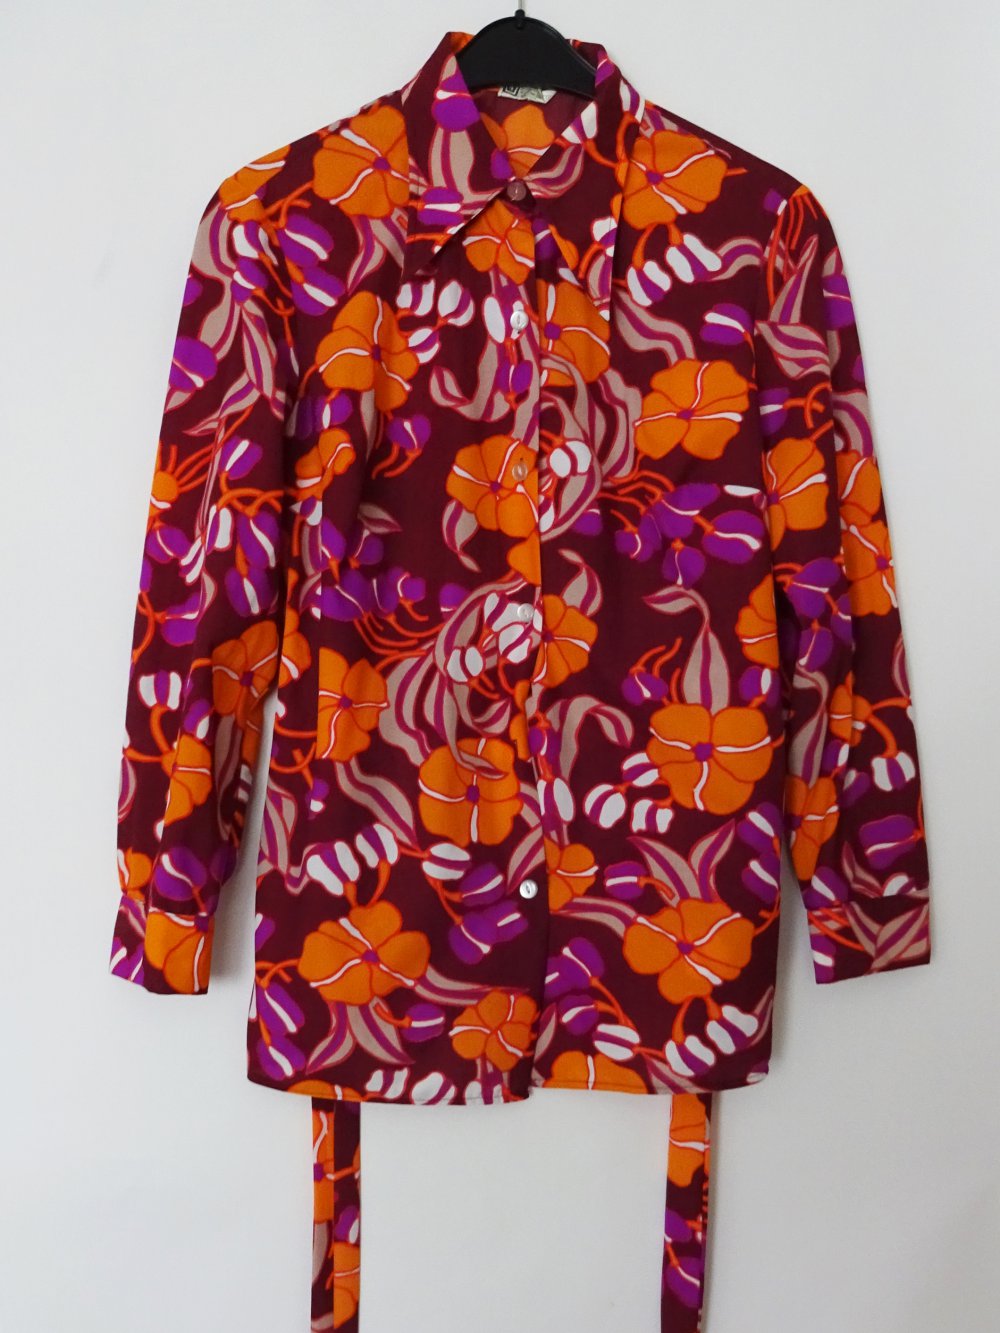 Bunte Vintage Bluse Hemd 70er Jahre Nylon UK England Floral Blumen Color Blocking Gr. L Gr. M